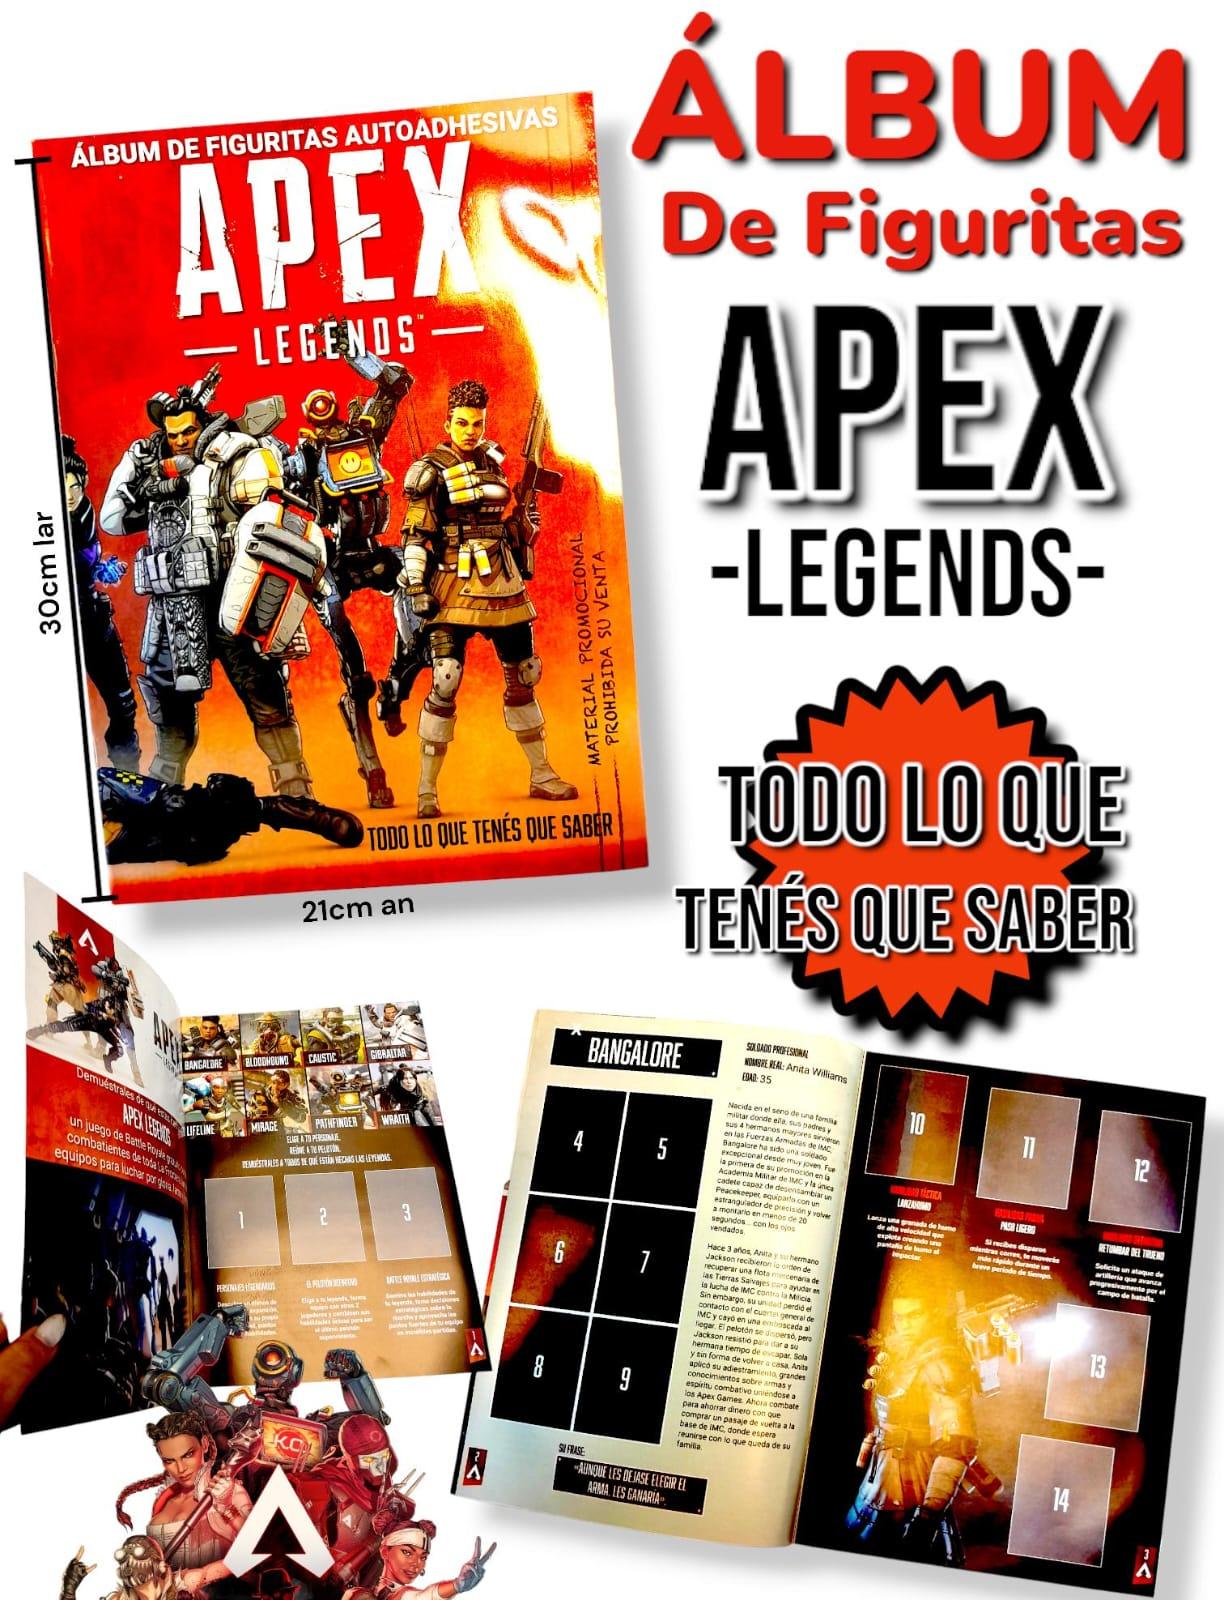 Album de Figuritas APEX -LEGENDS-